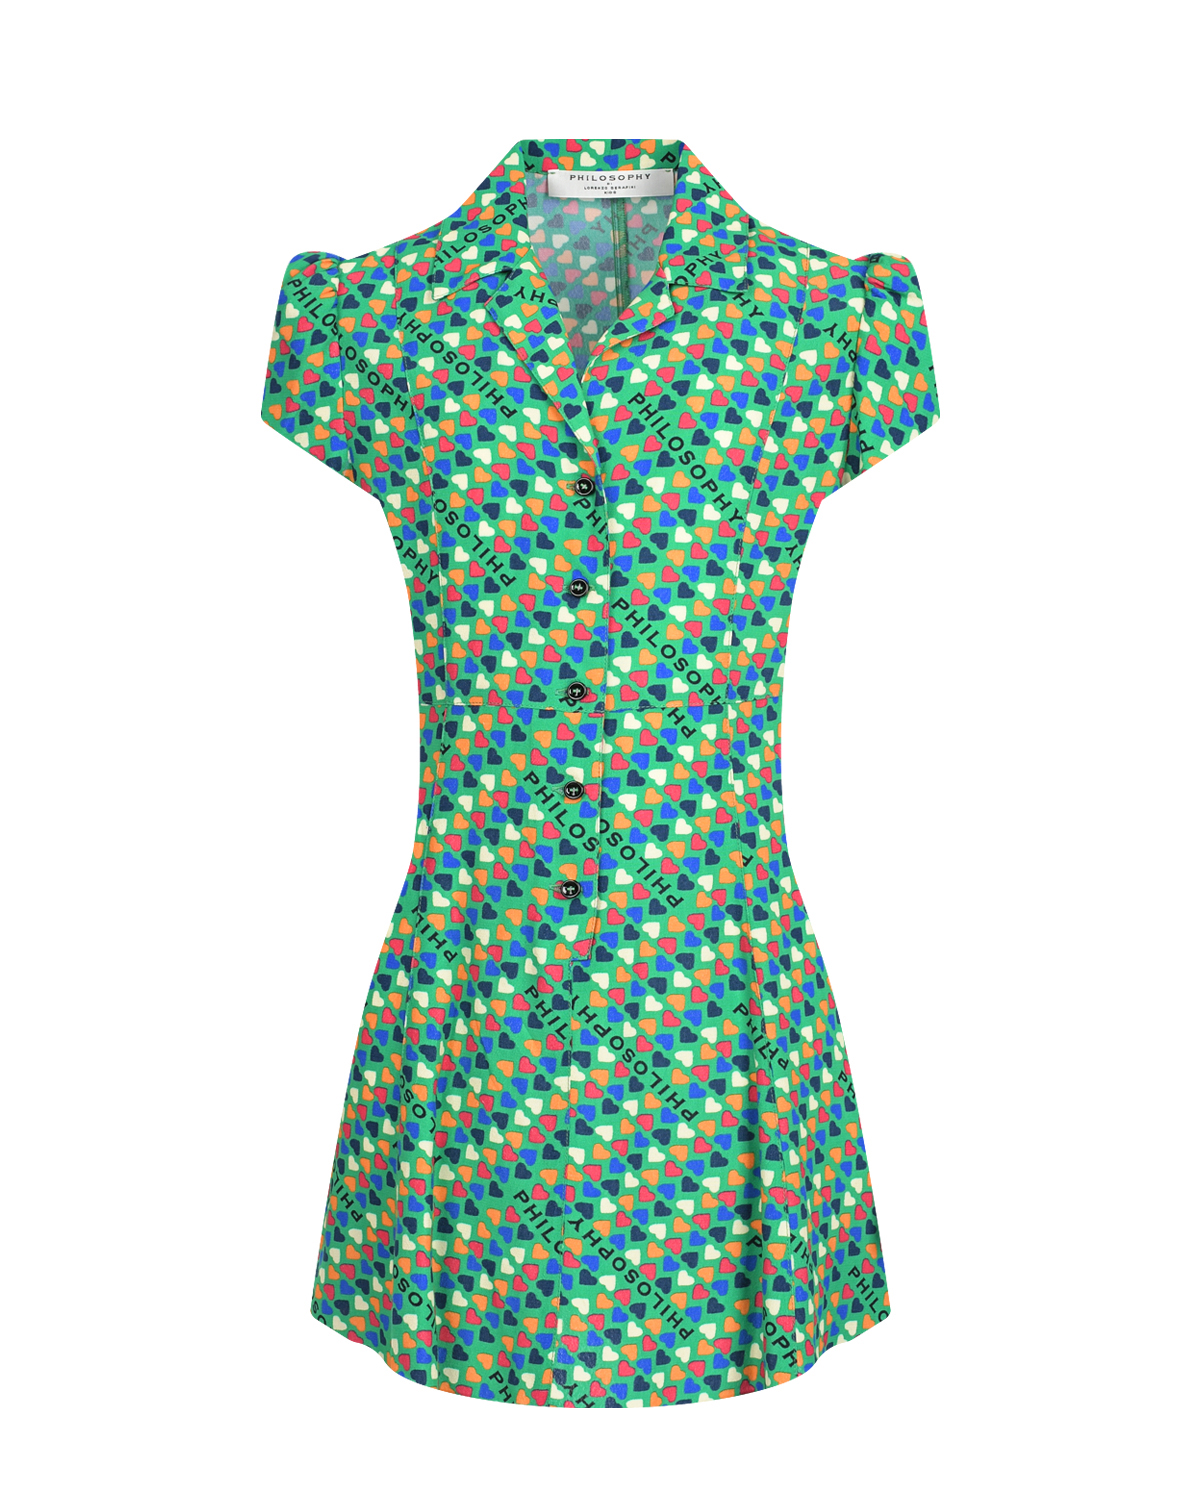 Зеленое платье с принтом "сердечки" Philosophy di Lorenzo Serafini Kids, размер 152, цвет зеленый - фото 1